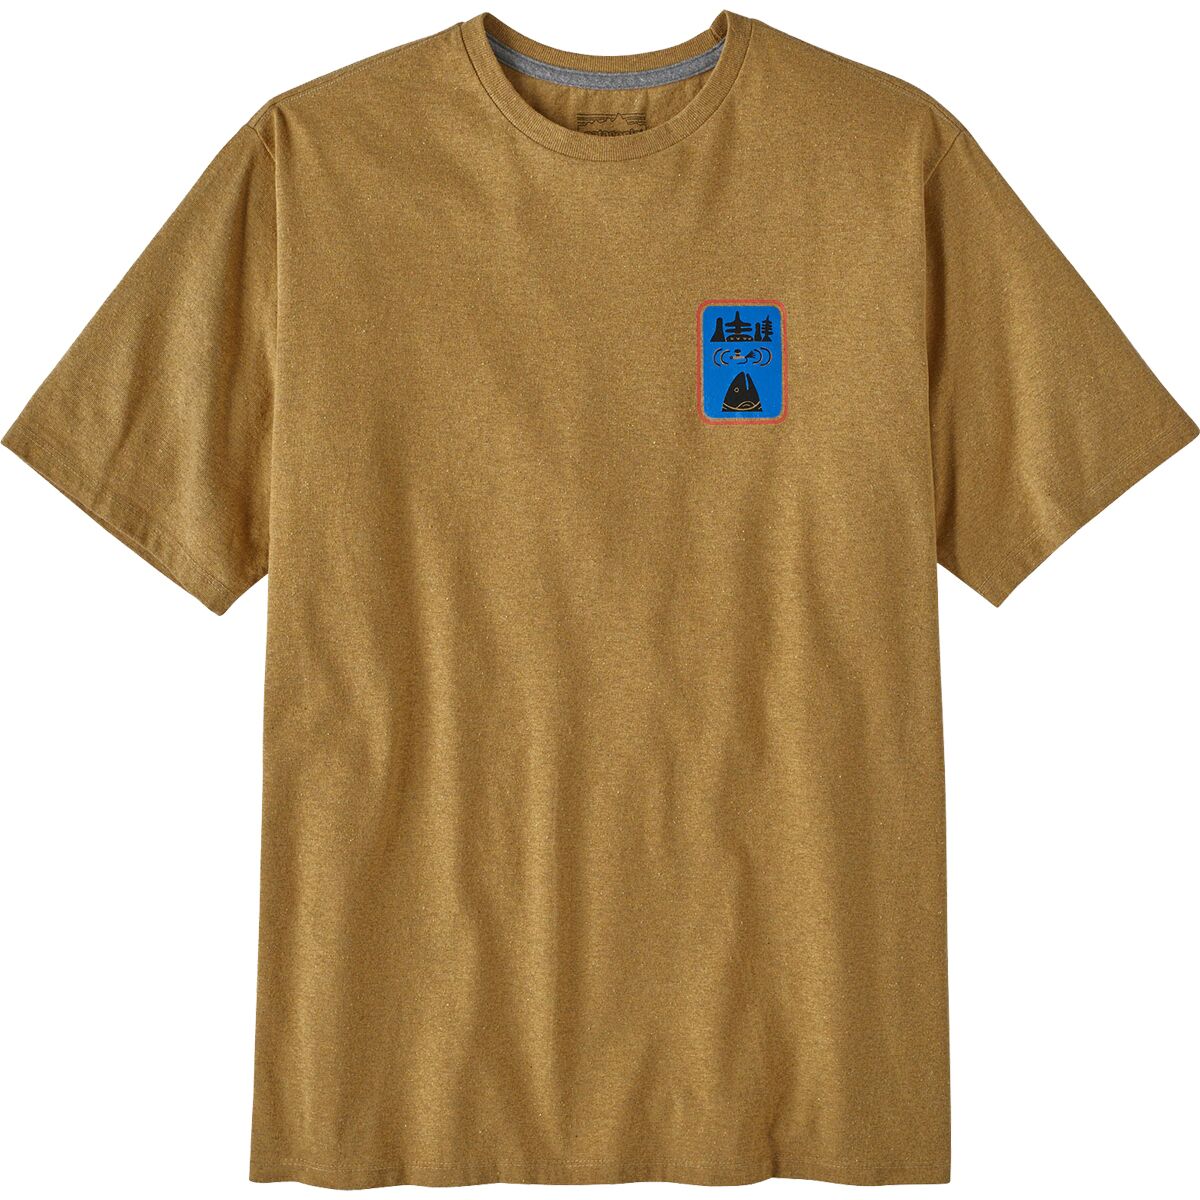 Возьмите на себя ответственность – футболка Patagonia, желтый монро м ответственность высвободите лидера внутри себя